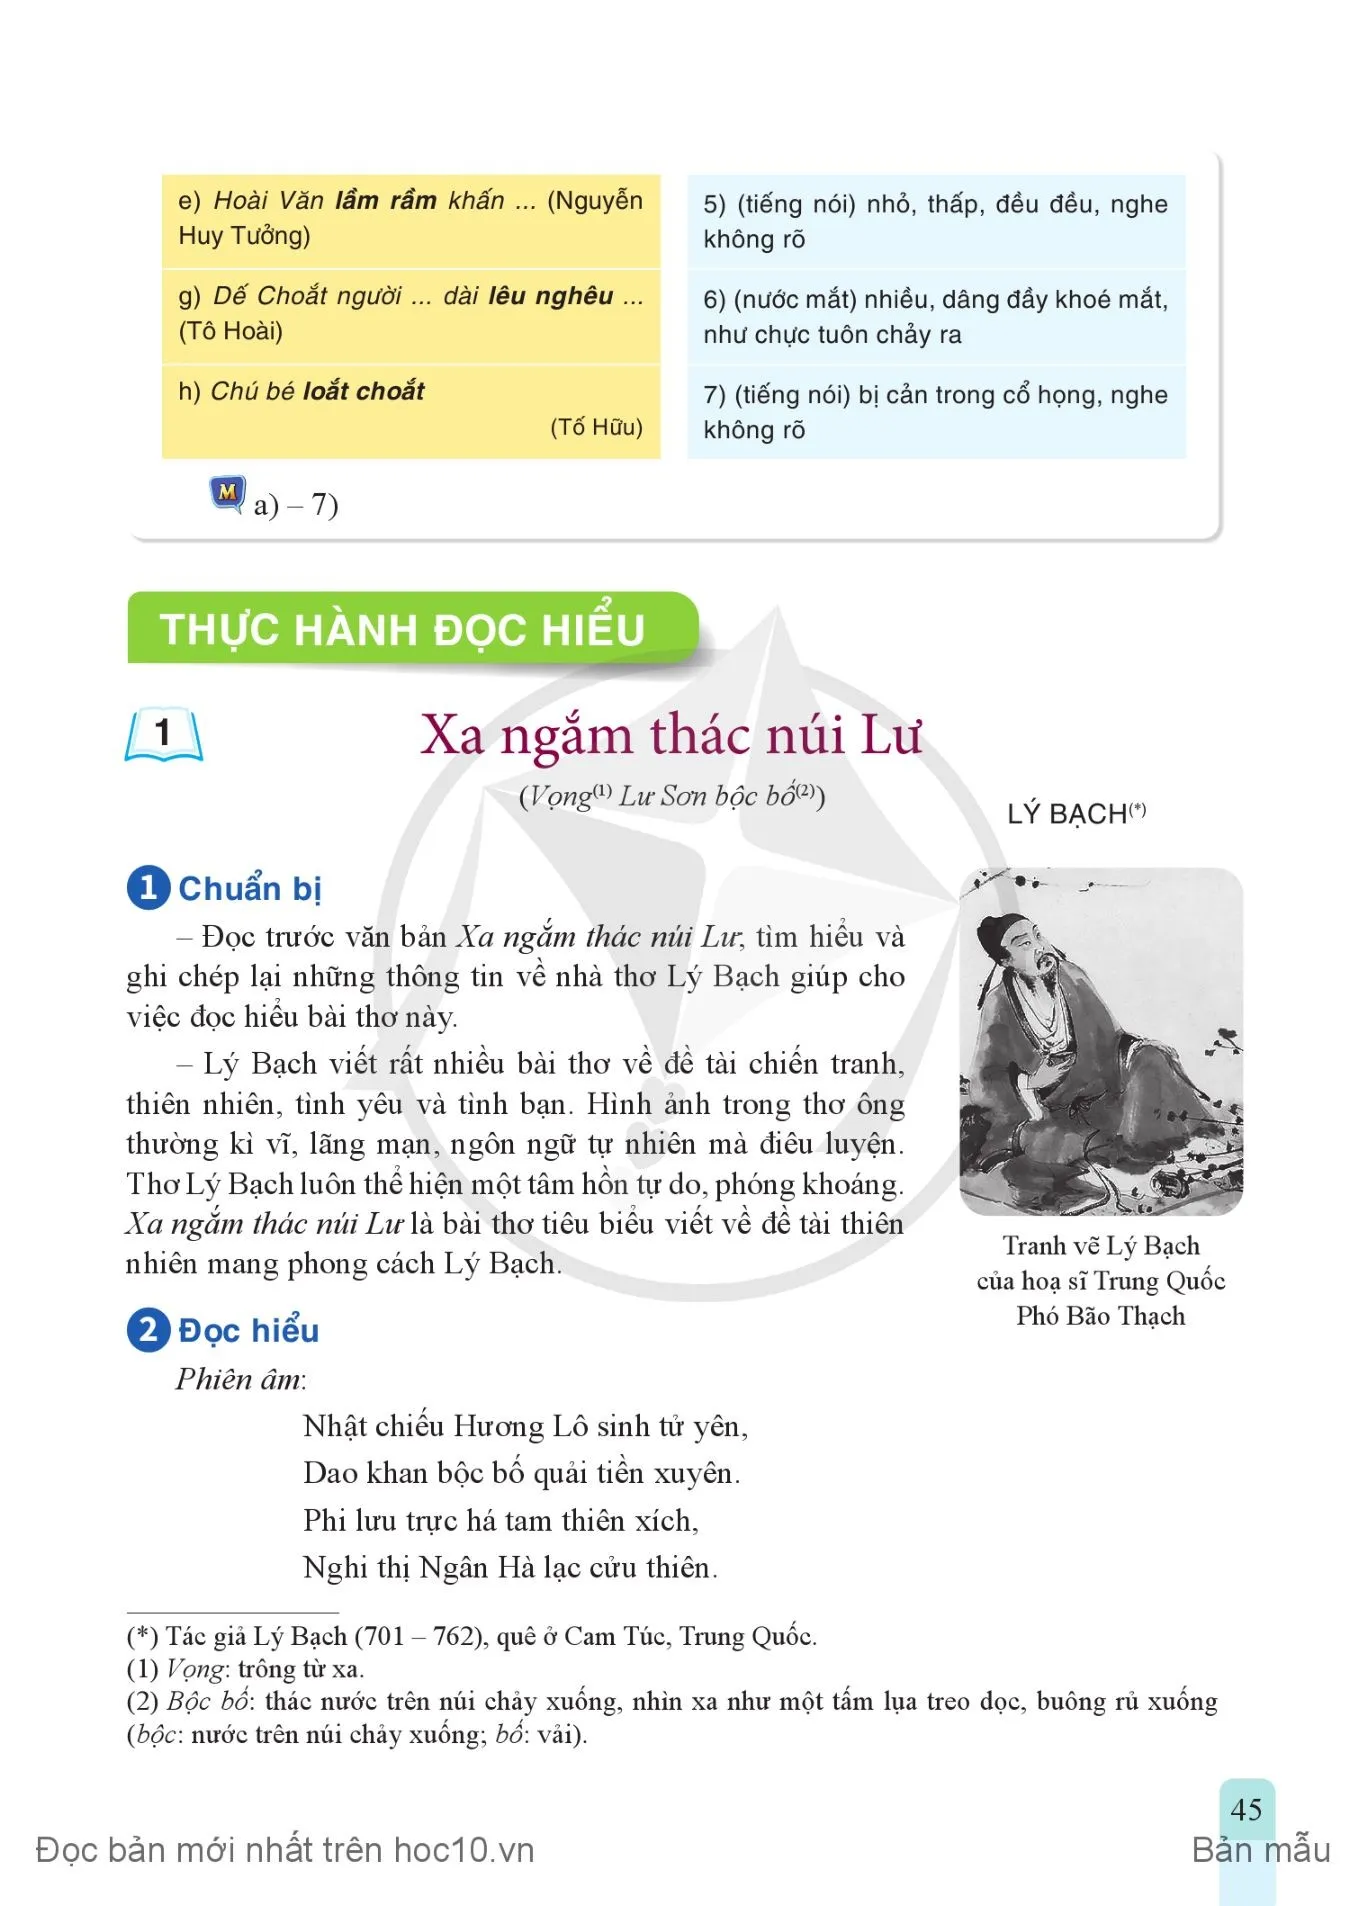 • Thực hành tiếng Việt: Đảo ngữ, câu hỏi tu từ, từ tượng hình, từ tượng thanh